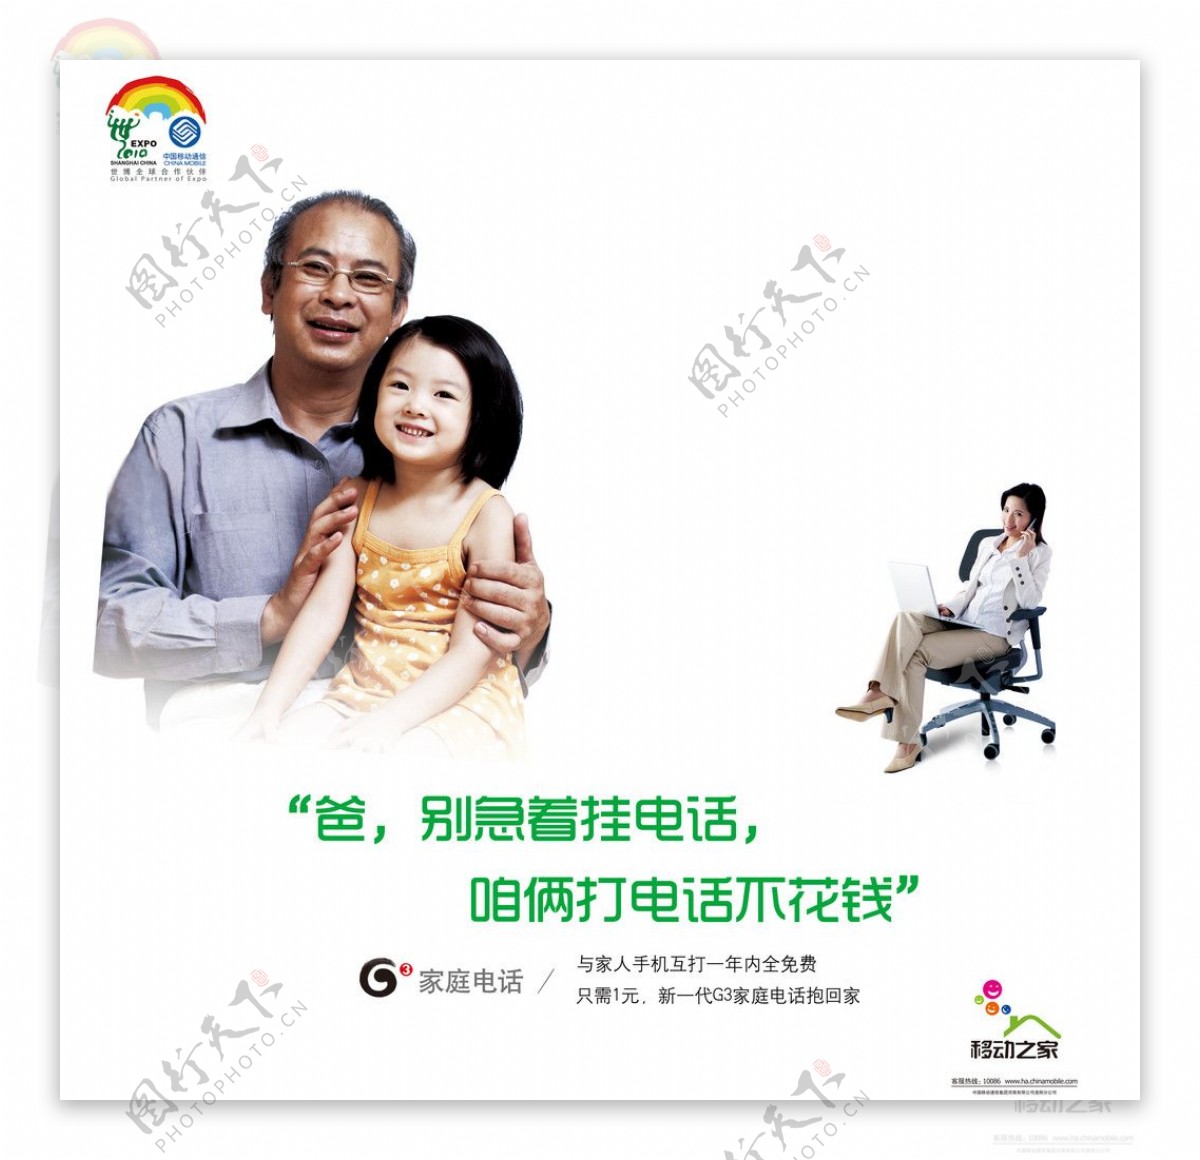 中国移动业务宣传画面